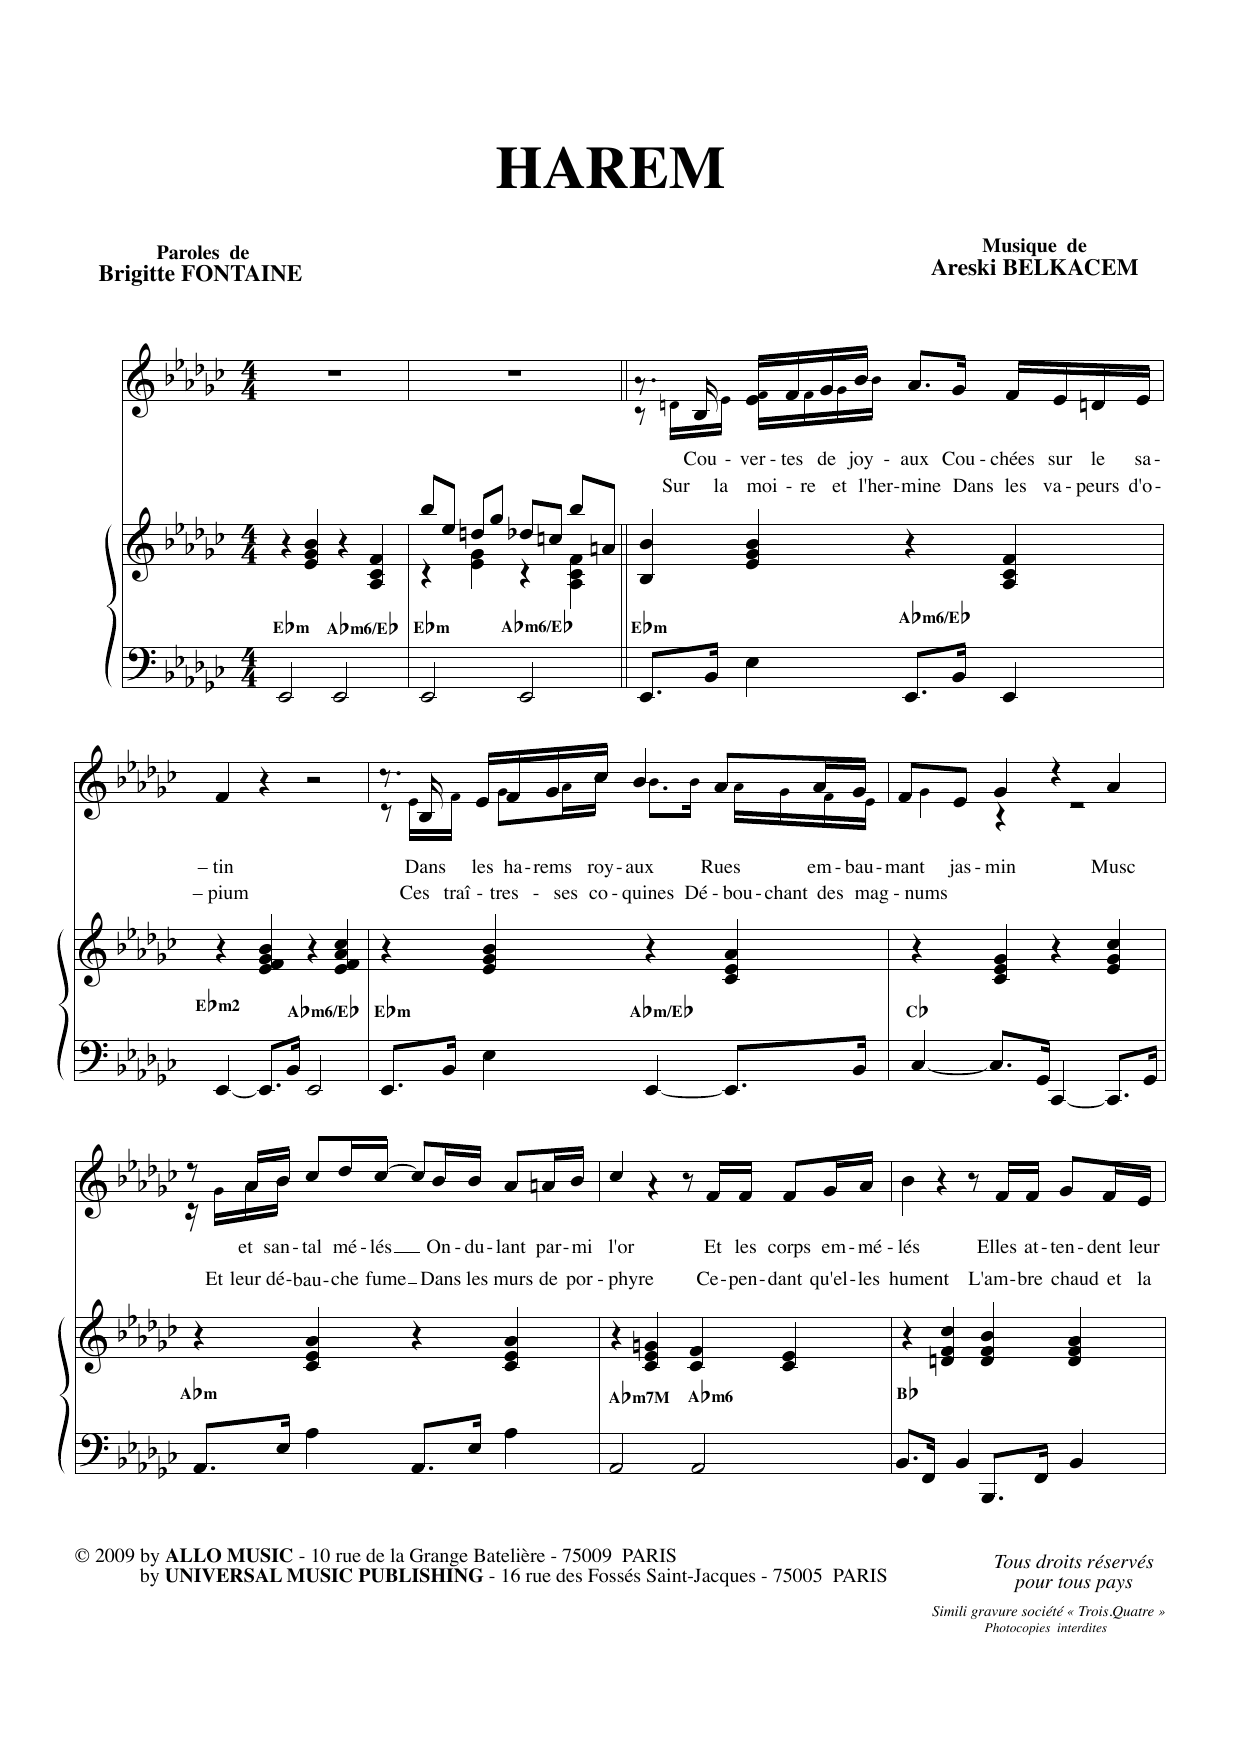 Brigitte Fontaine & Areski Belkacem Harem Sheet Music Notes & Chords for Piano & Vocal - Download or Print PDF